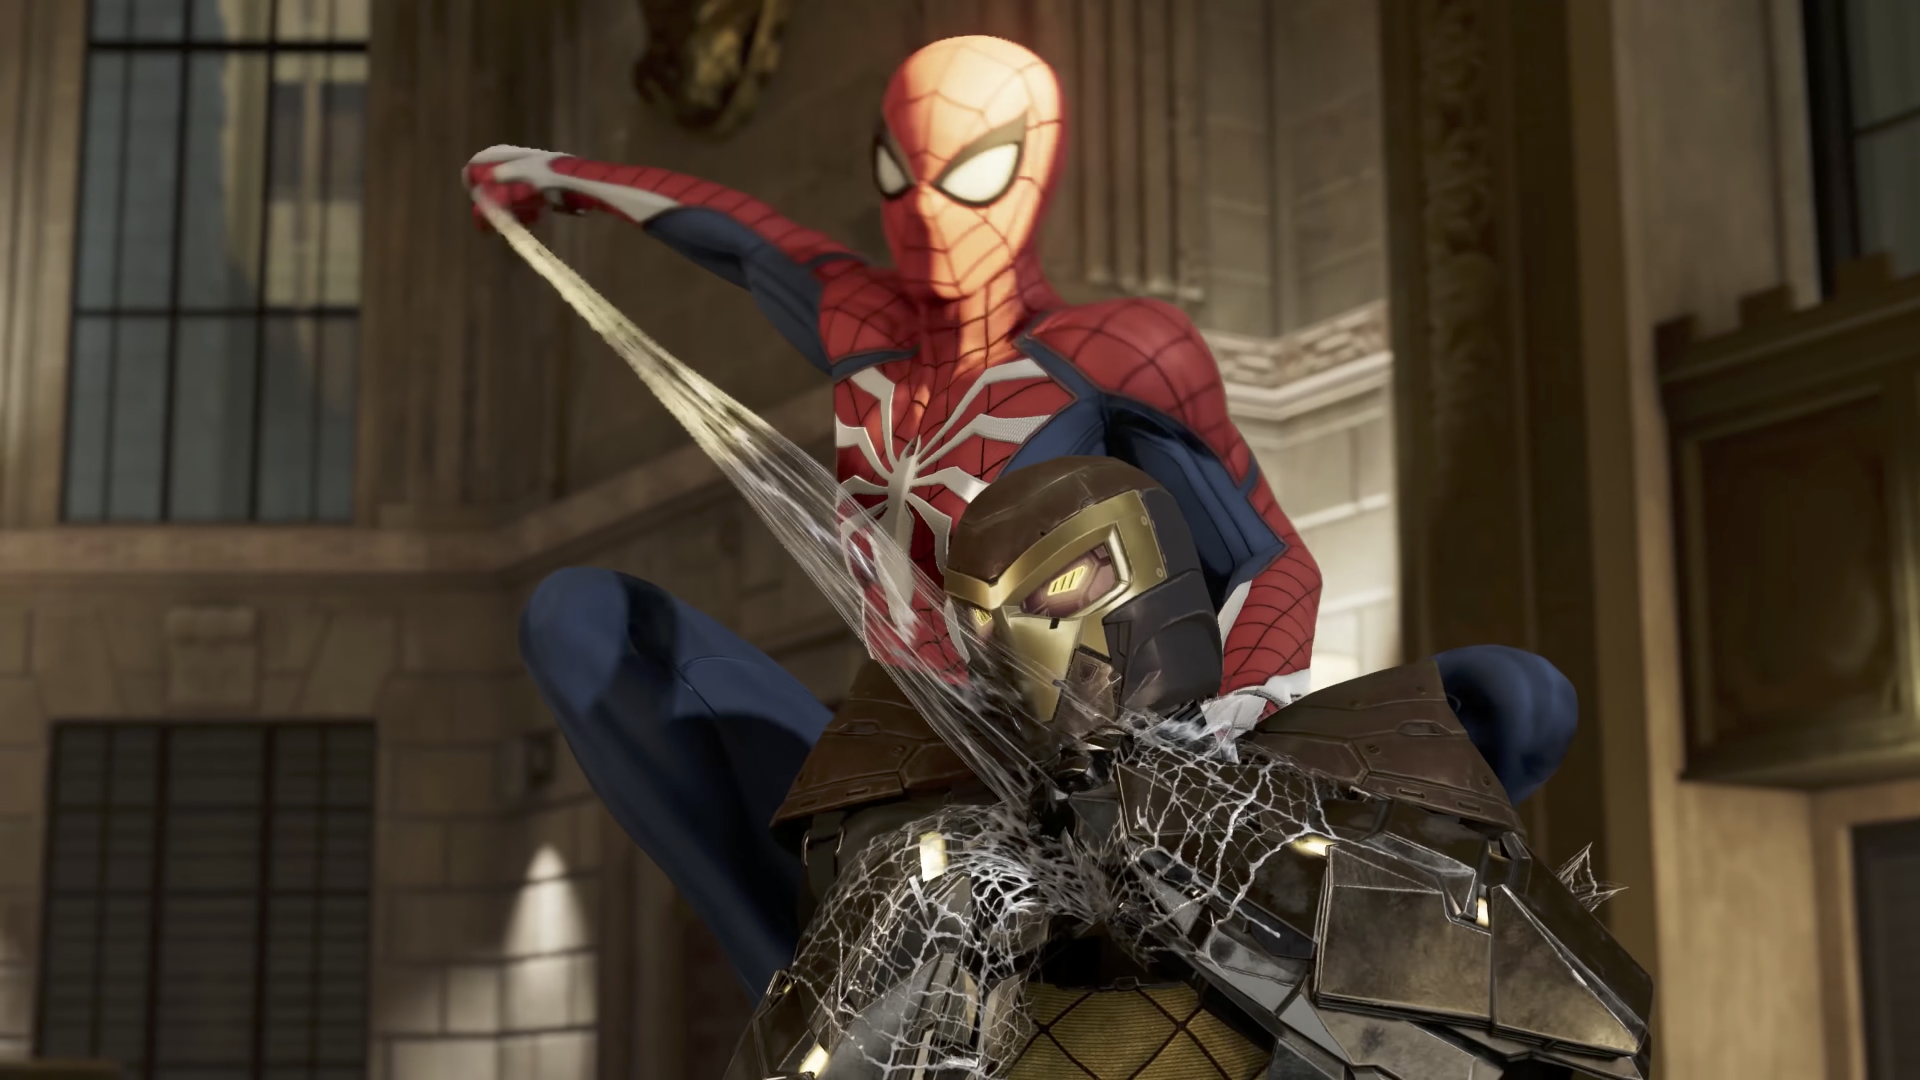 Homem Aranha Ps4 - Review: Spider-Man - The Enemy